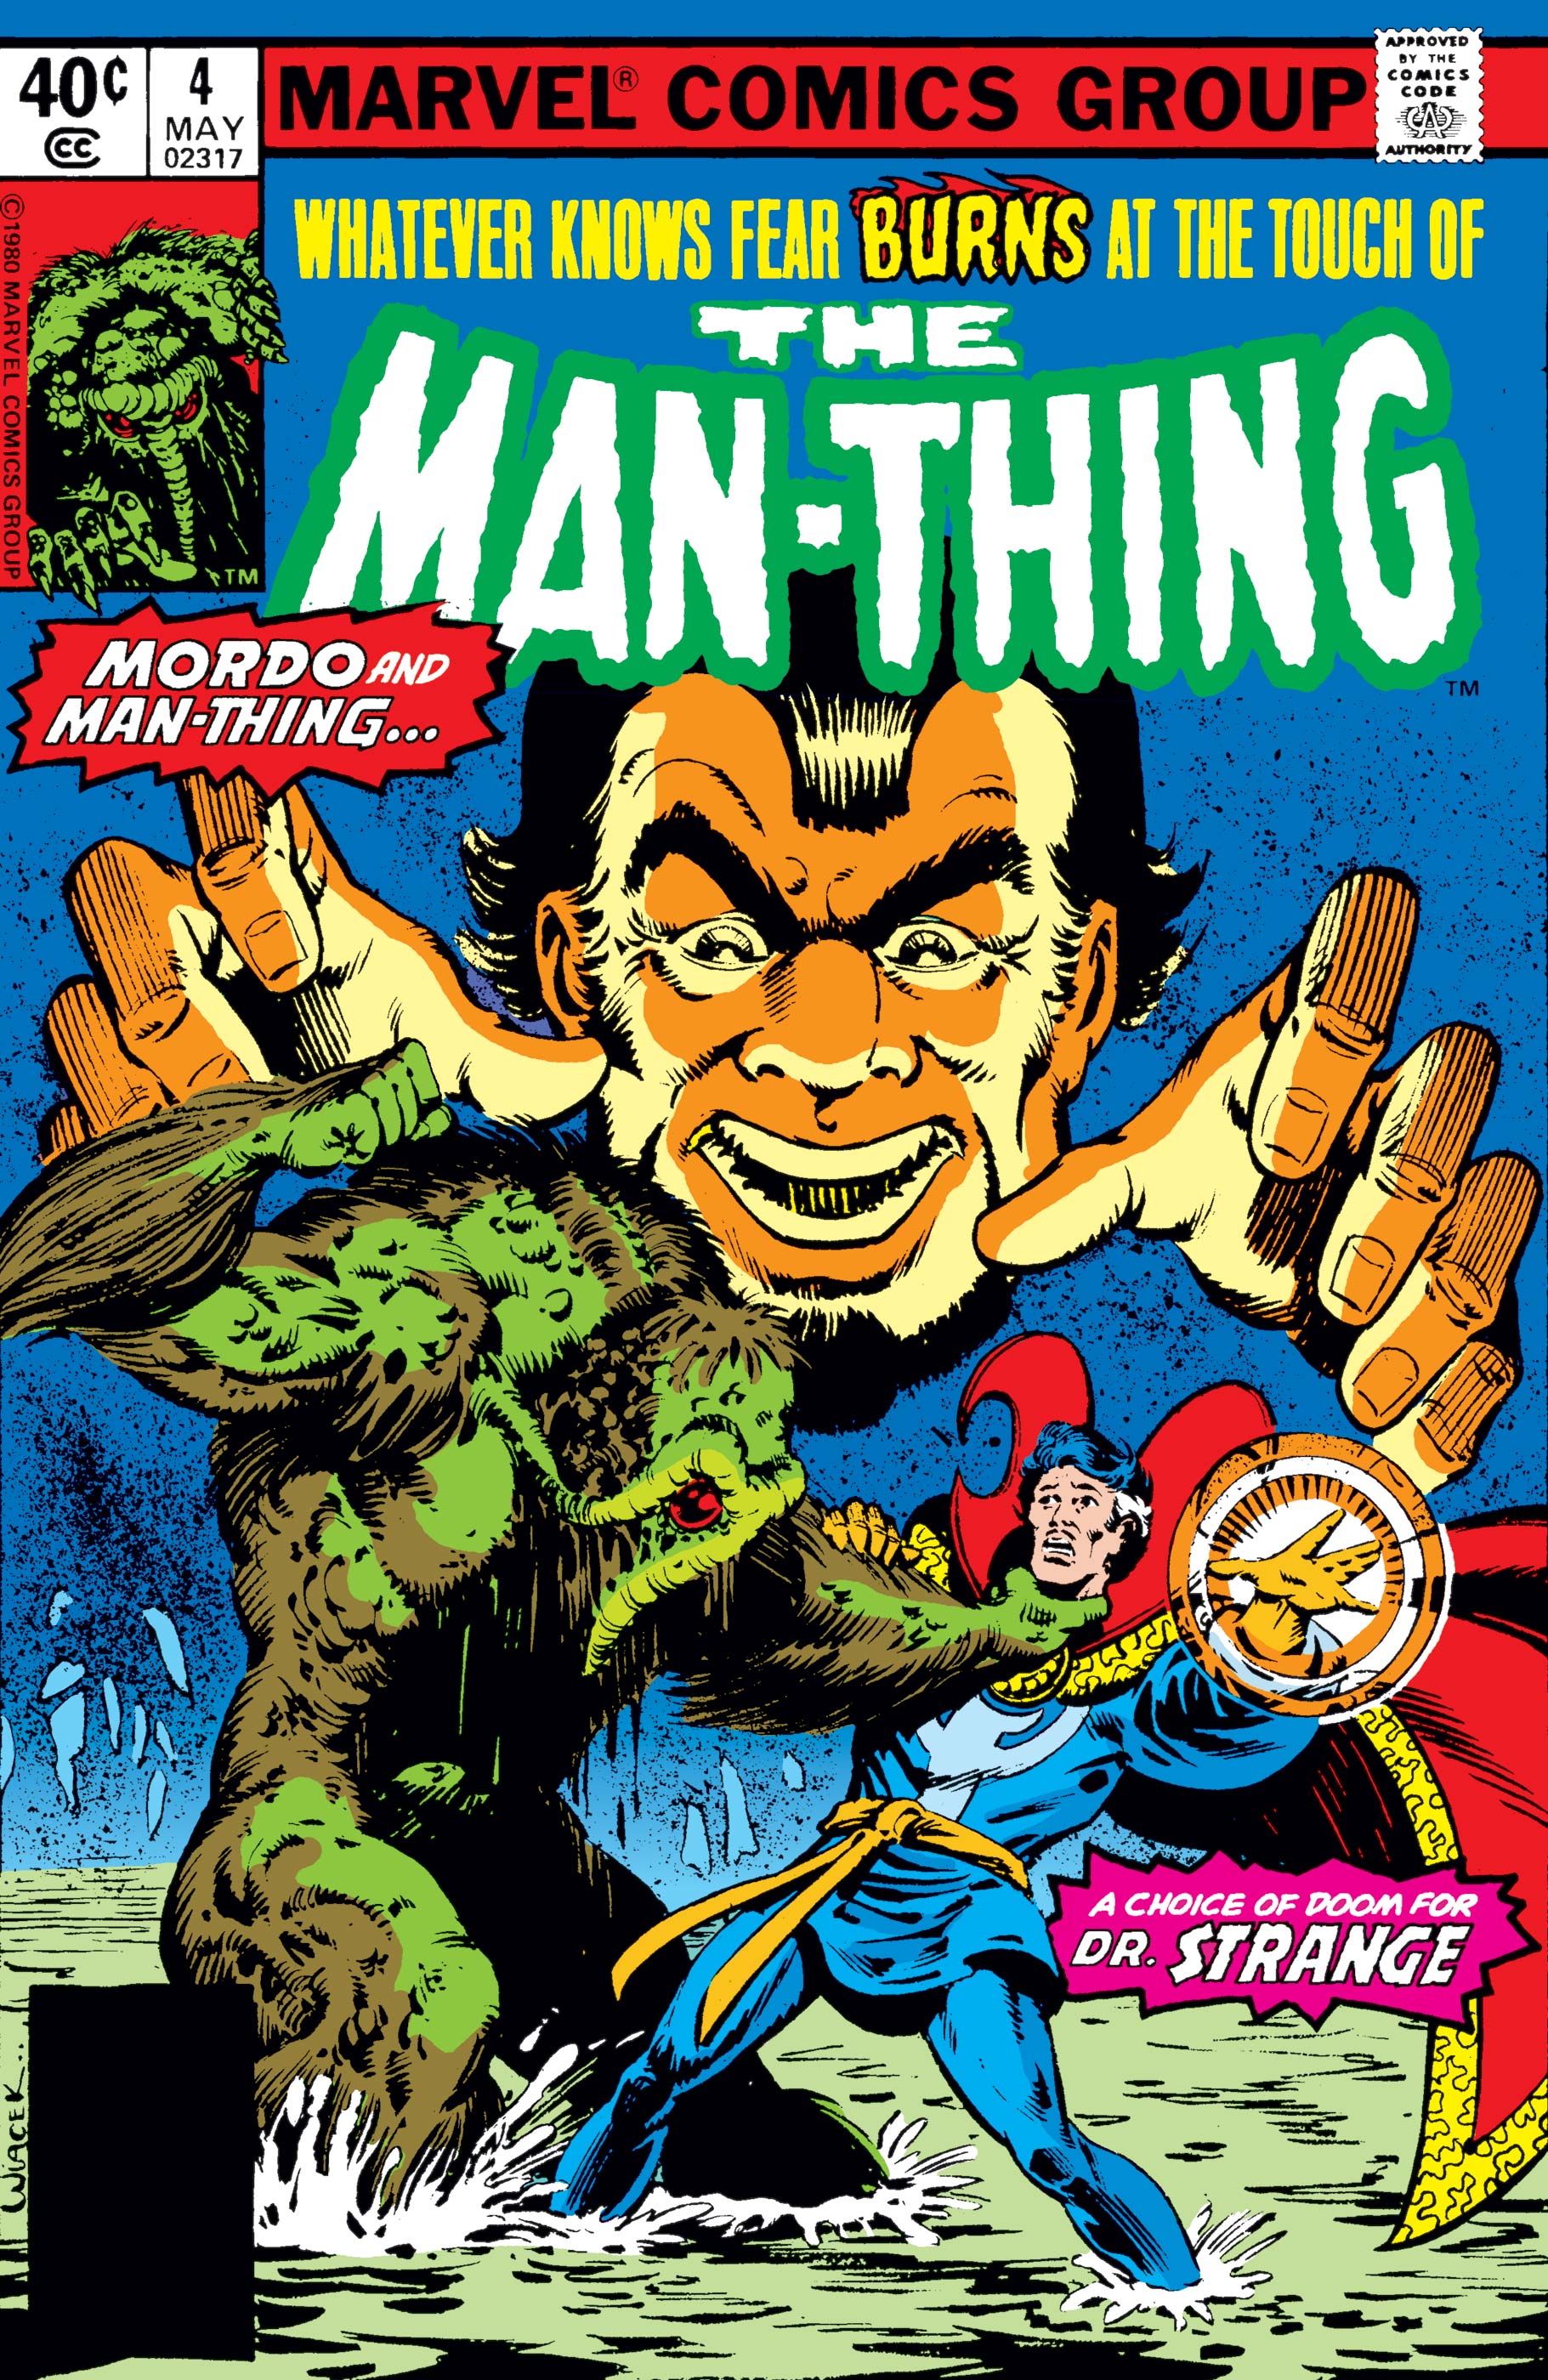 Man-Thing (1979) #4